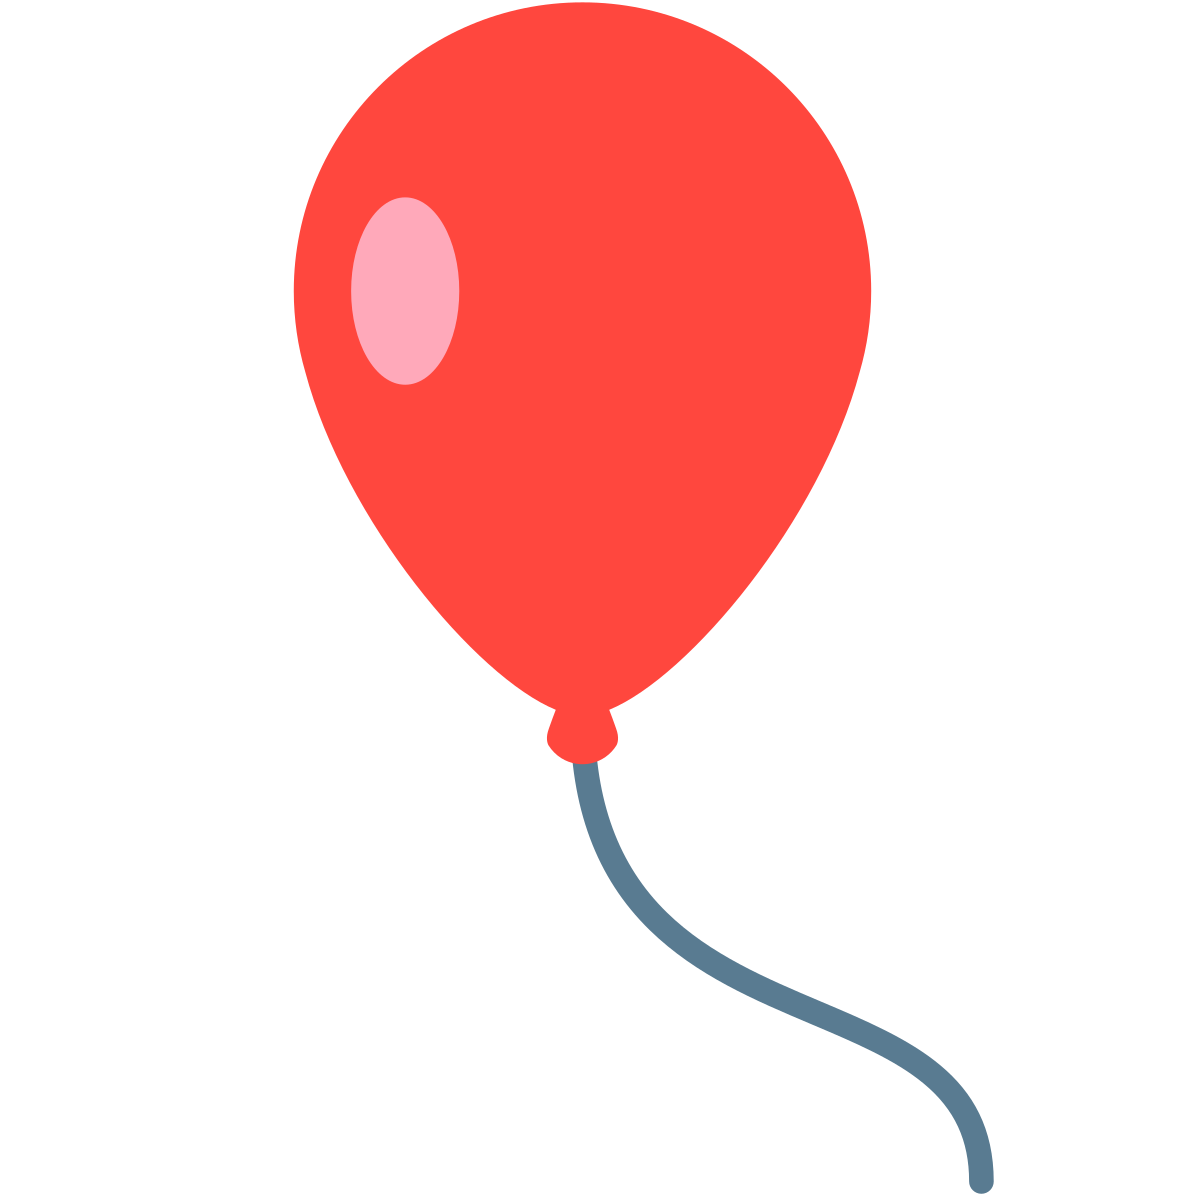 Небольшой легкий шарик. Красный воздушный шарик. Воздушный шарик рисунок. Воздушный шарик рисунок без фона. Красные воздушные шары на прозрачном фоне.